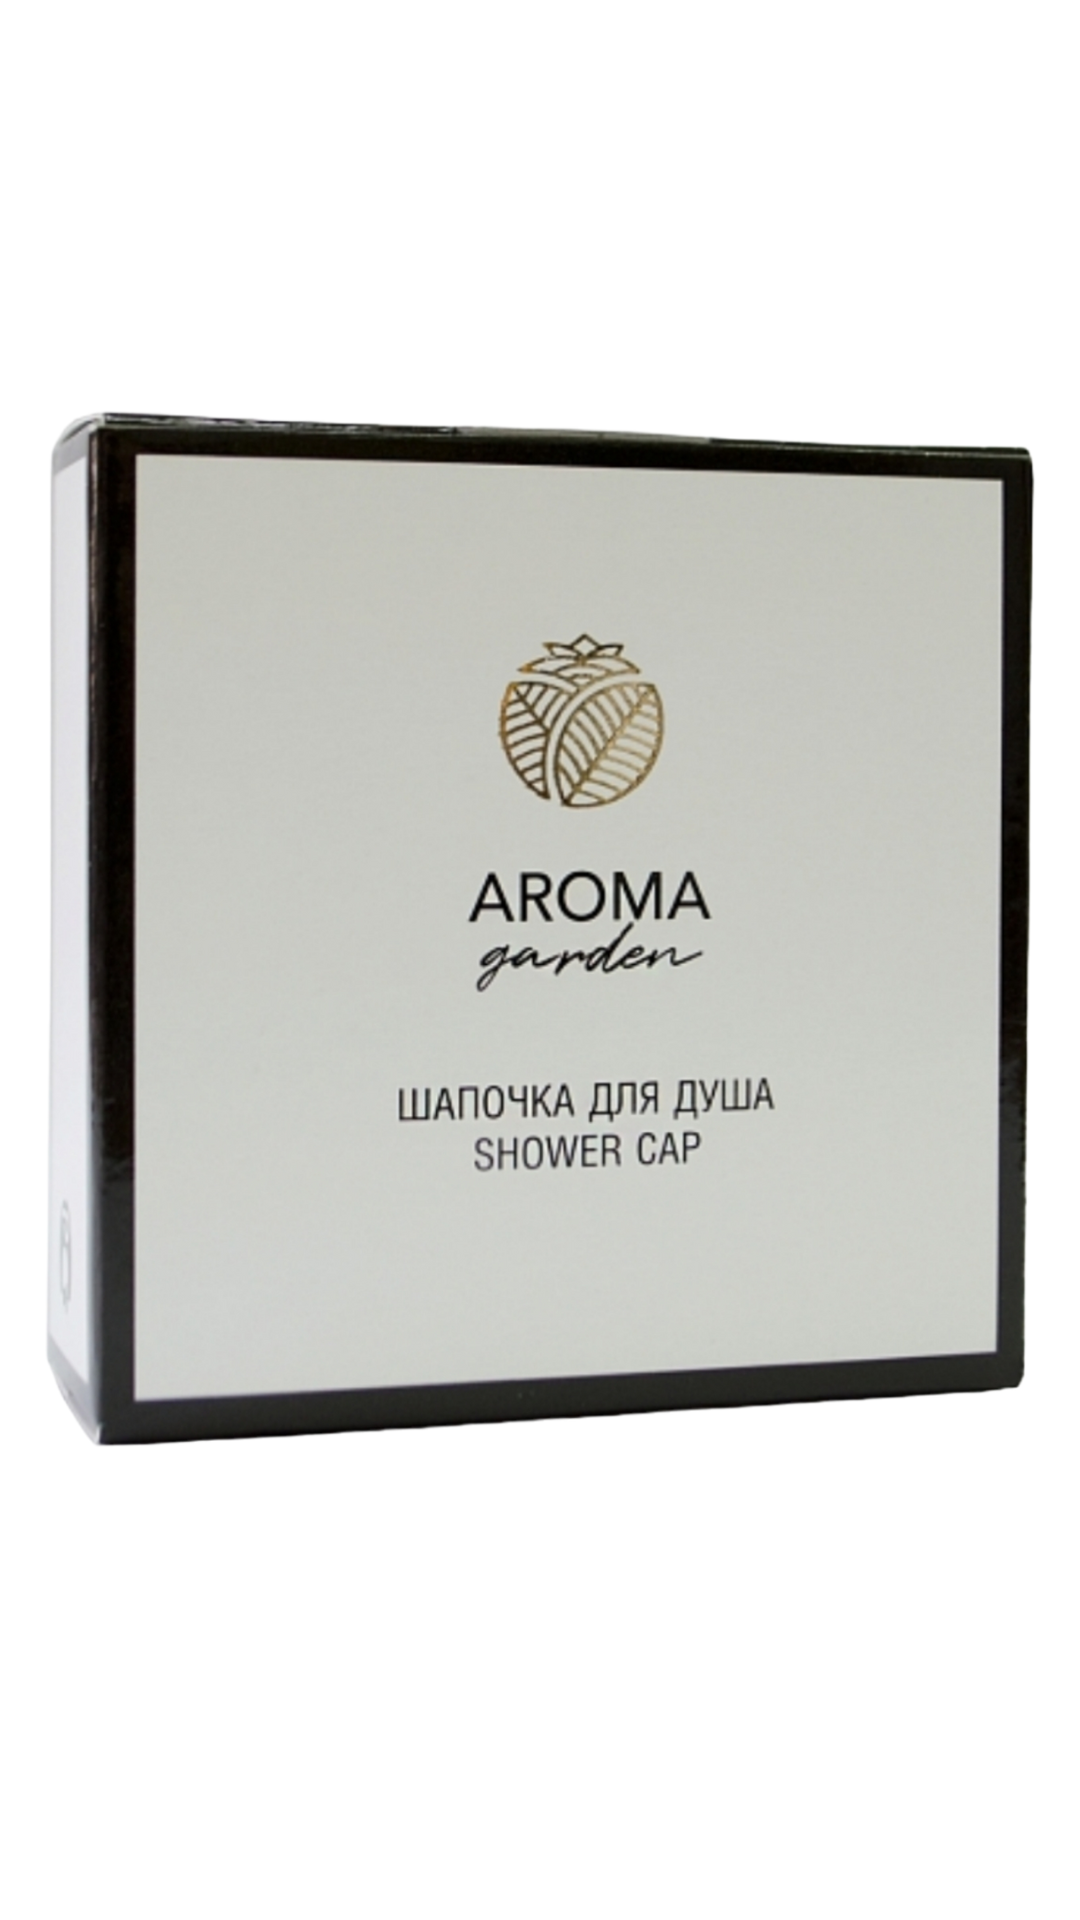 Шапочки для душа Aroma Garden картон 250 шт. звуковые шапочки подвижные логопедические игры со звуками [ш] [ж]